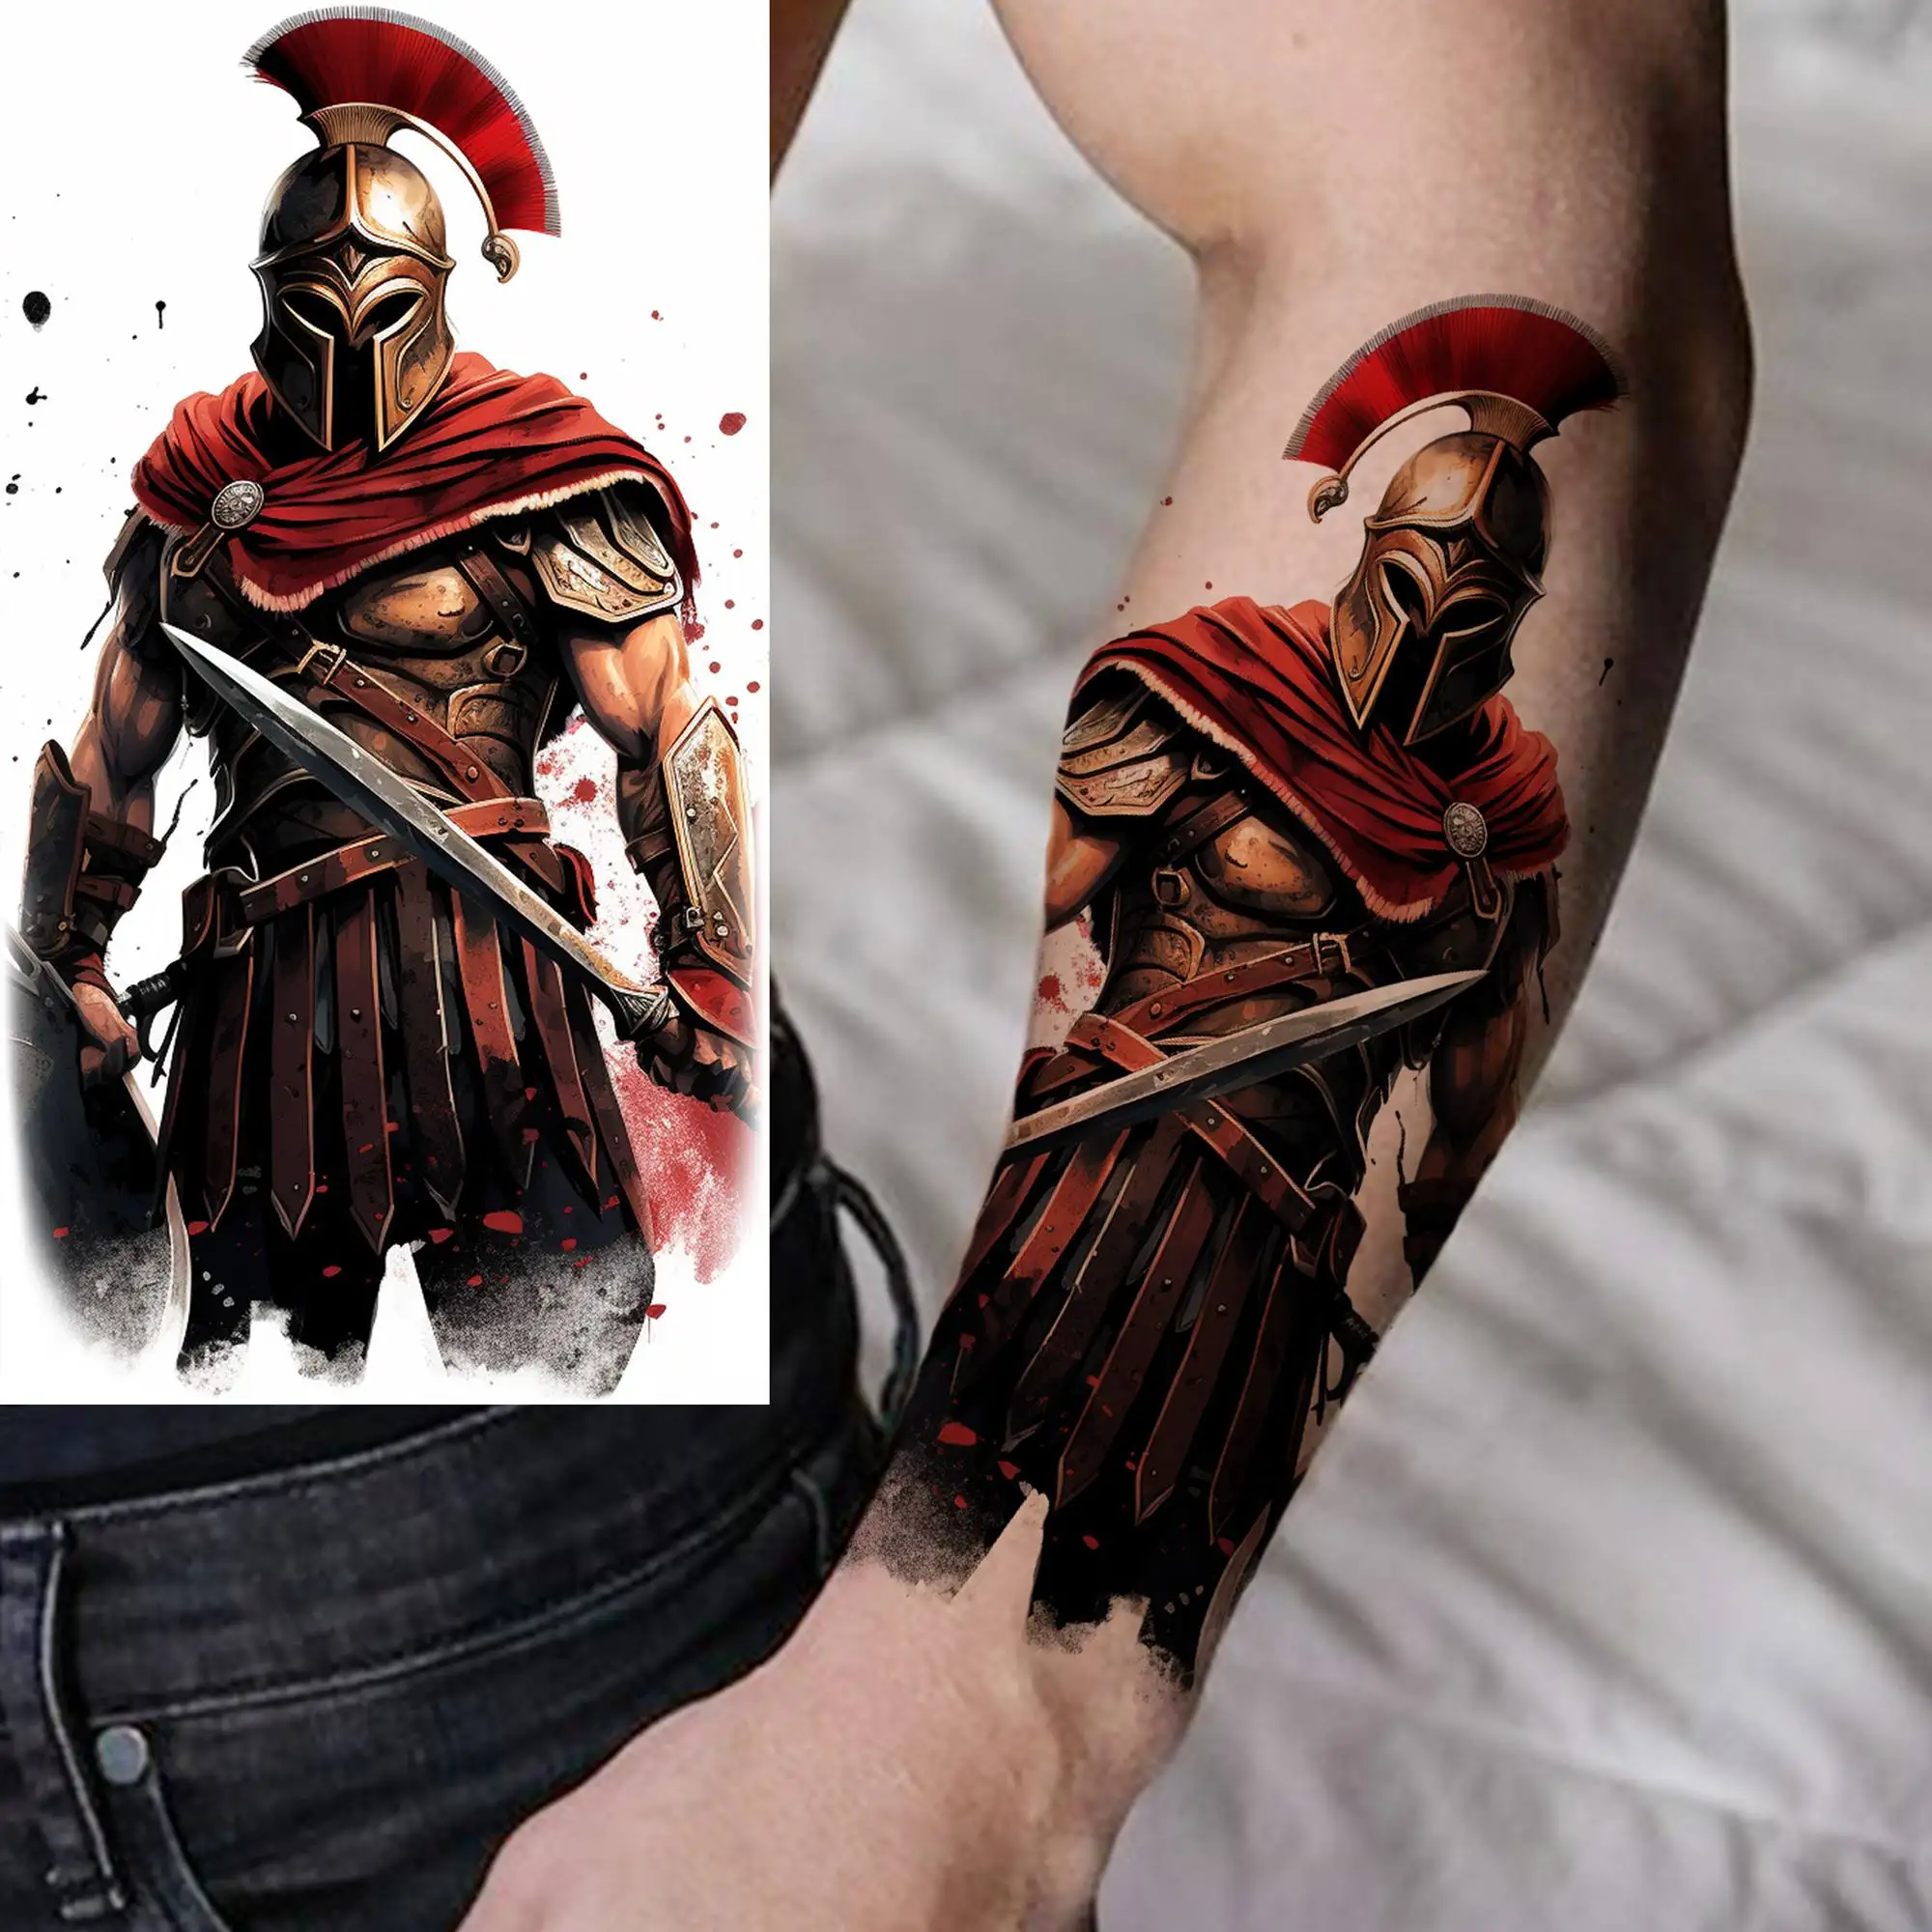 Tattoo uploaded by Franco Pozella • Healed tattoo Spartan tattoo #spartan # warrior #realistic #blackandgreytattoo • Tattoodo